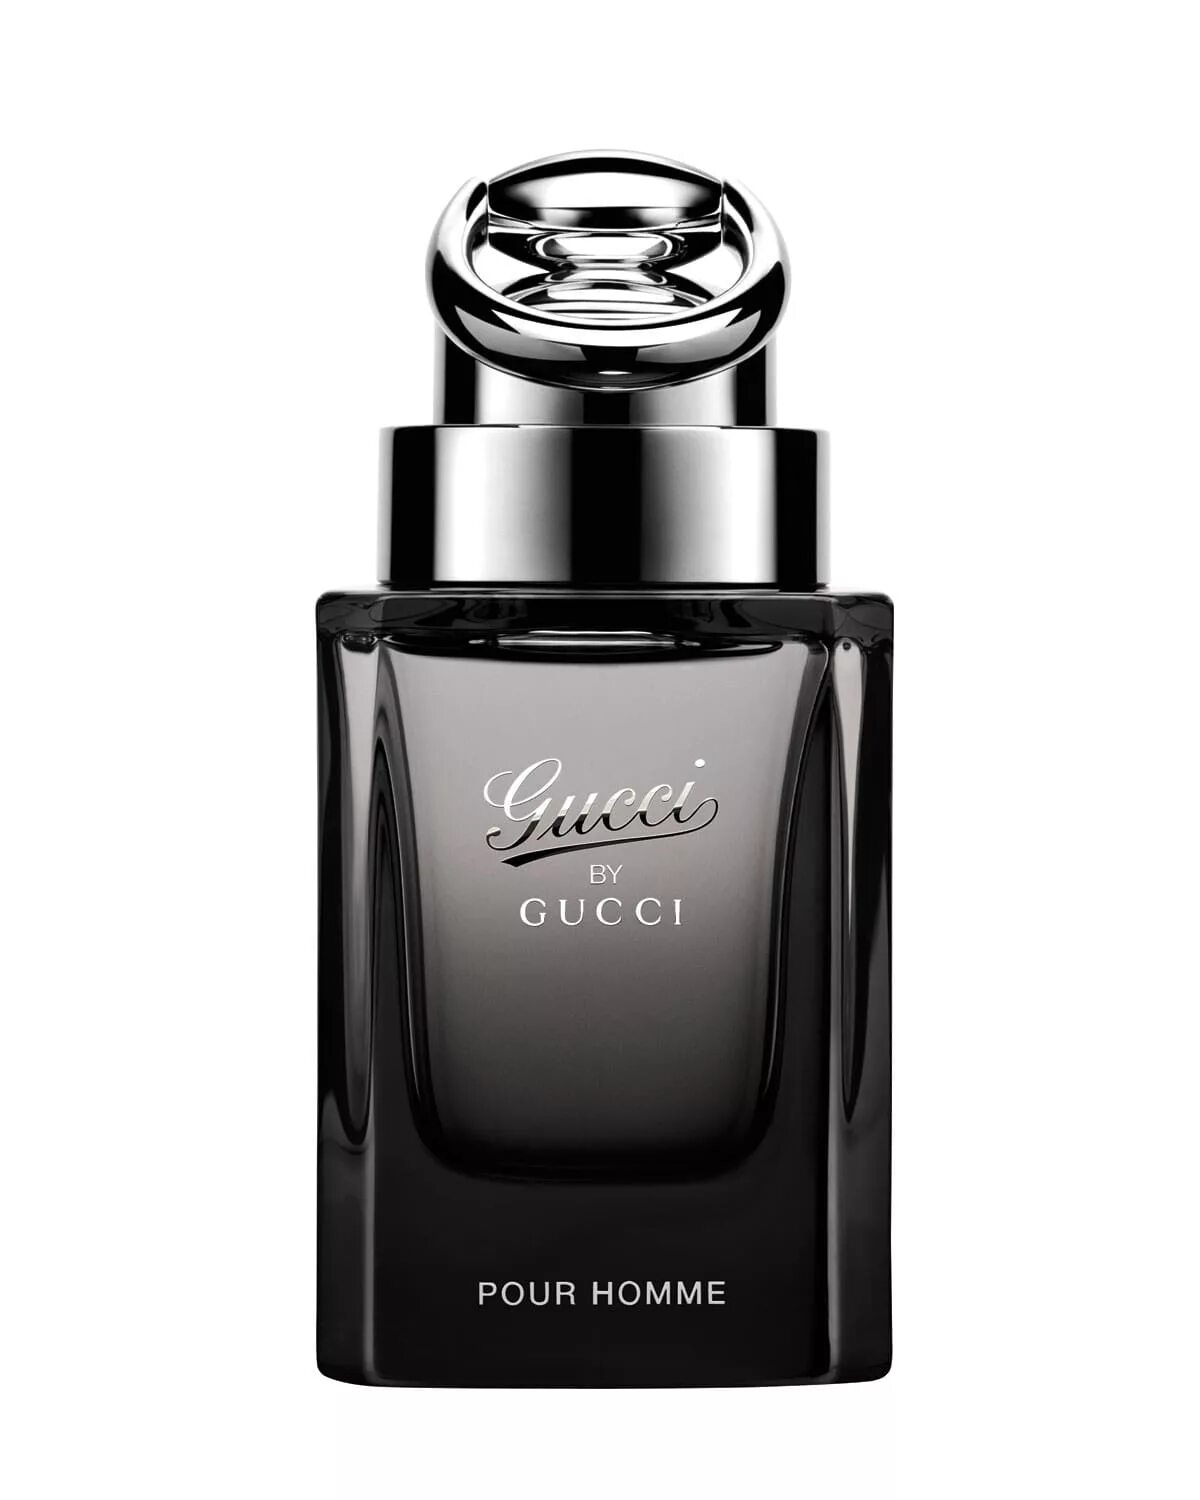 Gucci by Gucci pour homme 90ml. Gucci pour homme EDT 50ml. Gucci by Gucci pour homme 100ml. Gucci pour homme туалетная.